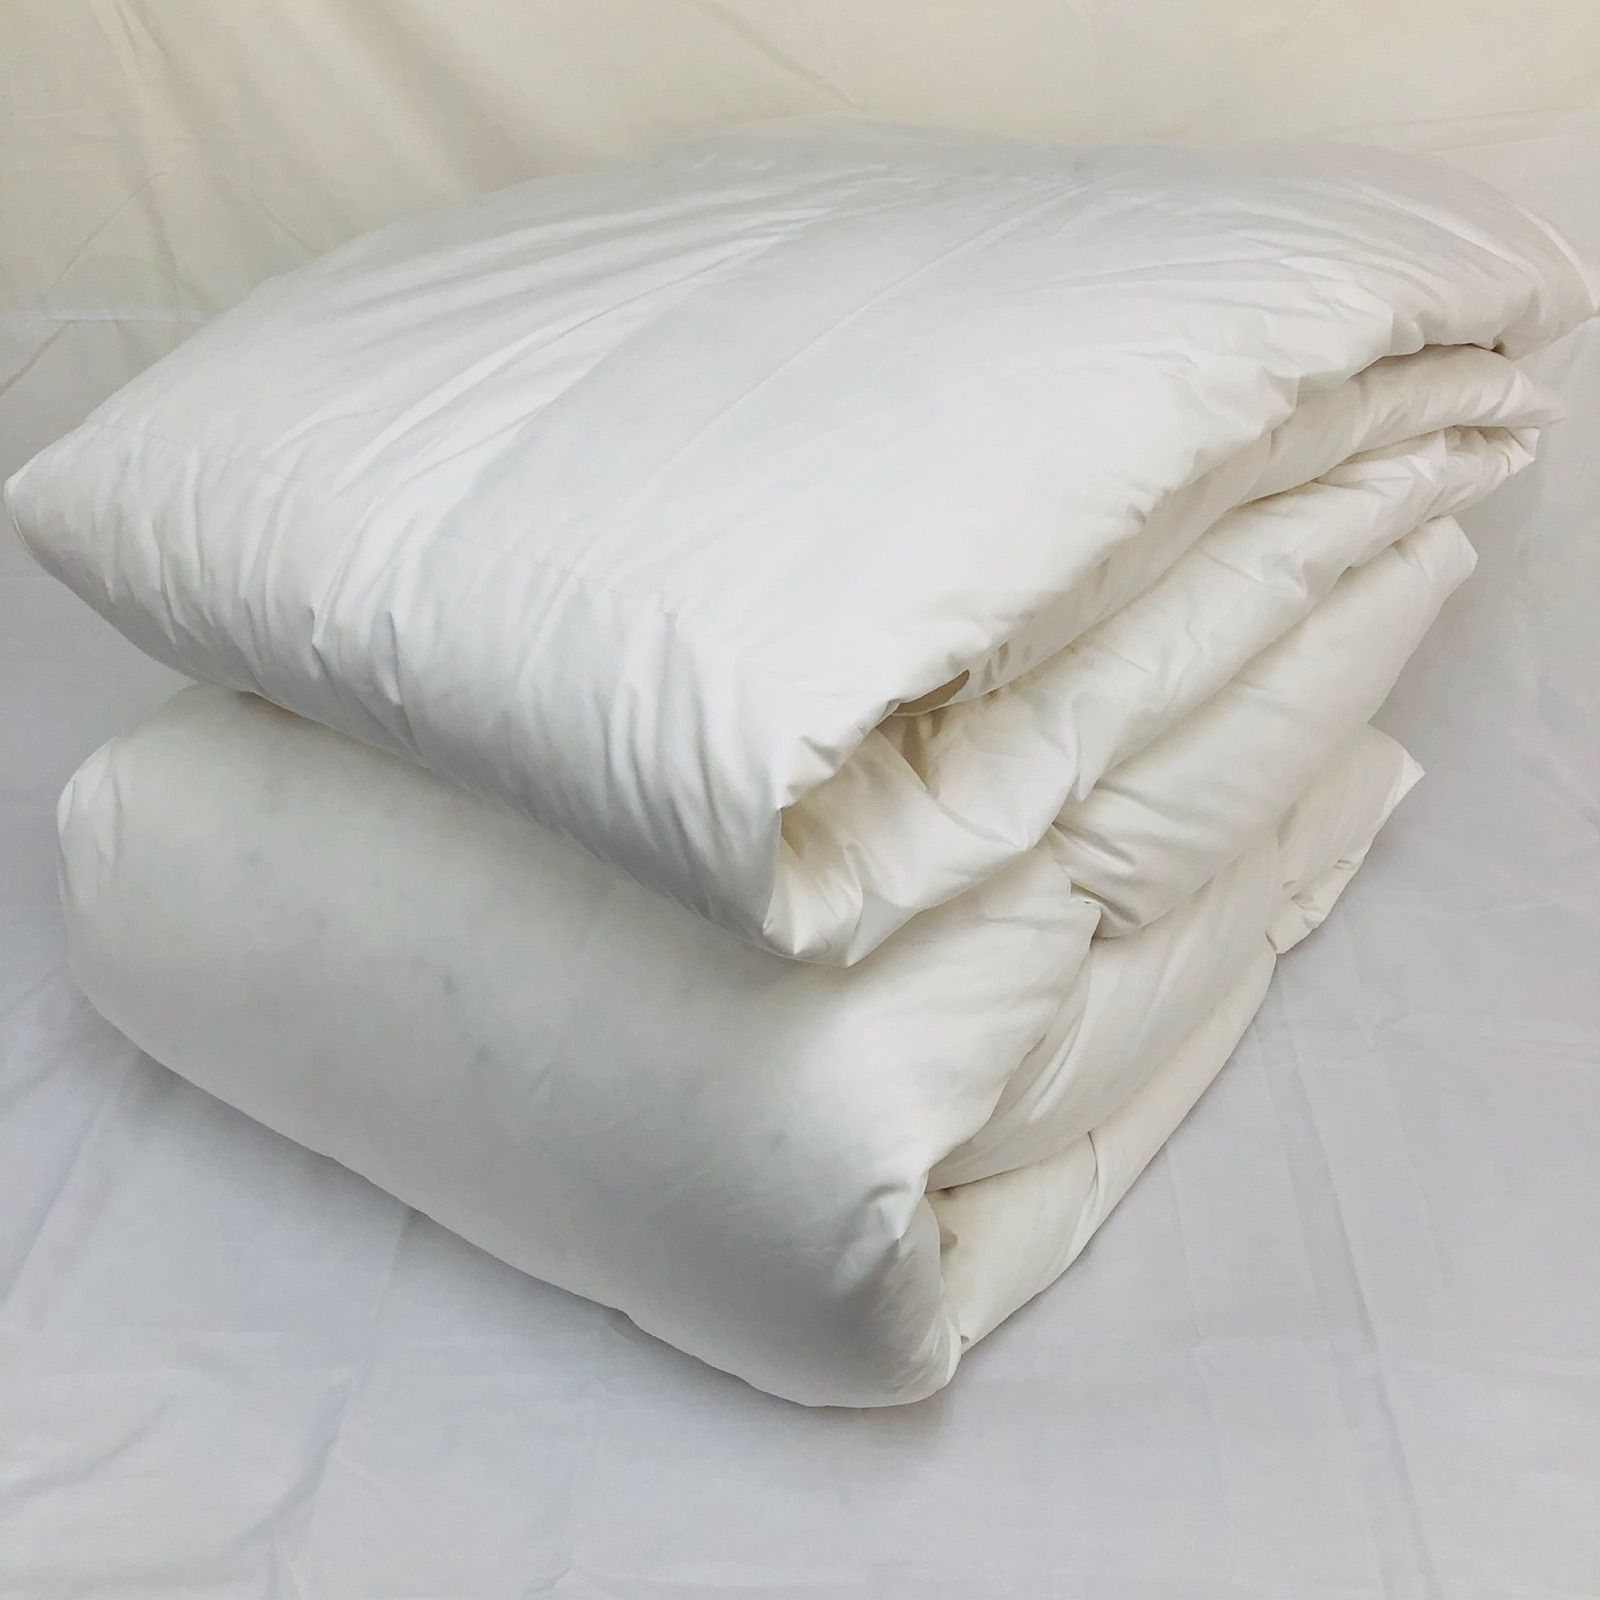 羽毛布団 シングル ニューゴールド 白色 日本製 150×210cm